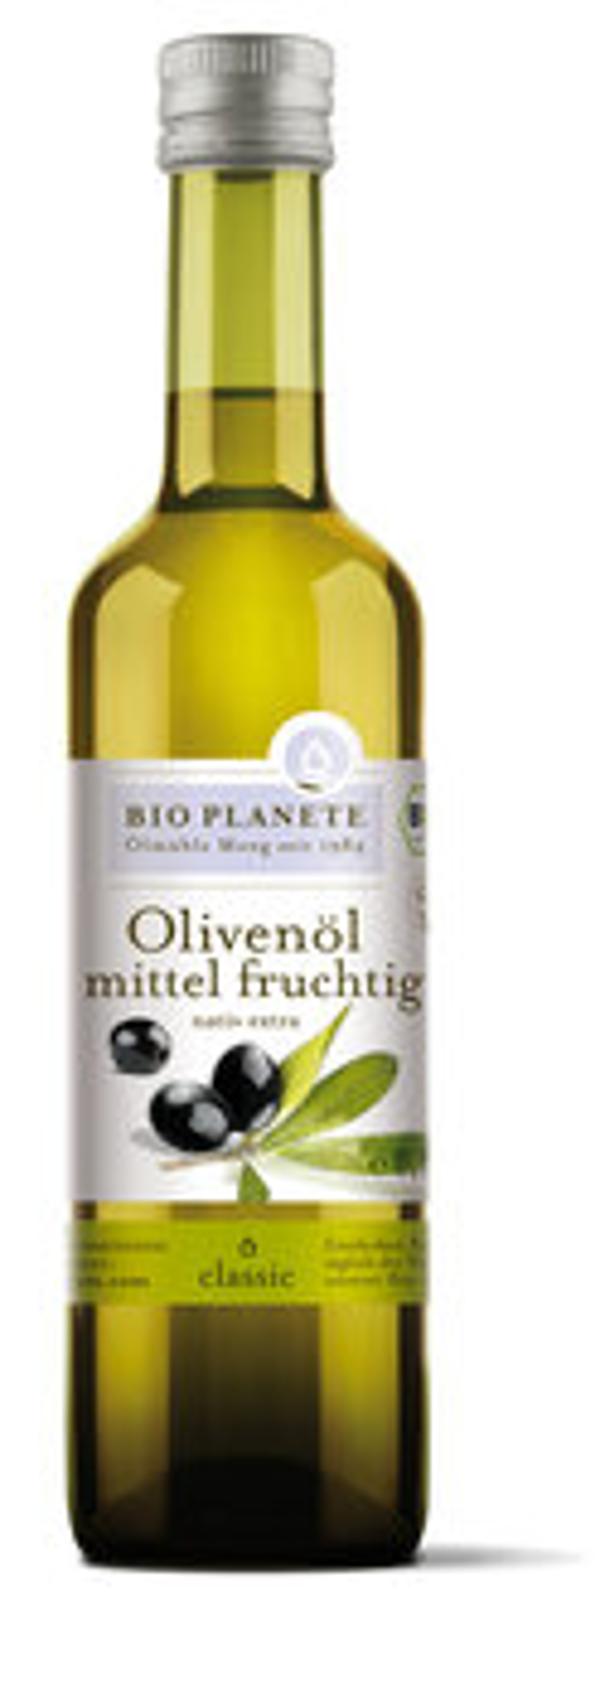 Produktbild von Bio Planète Olivenöl mittel fruchtig 500ml